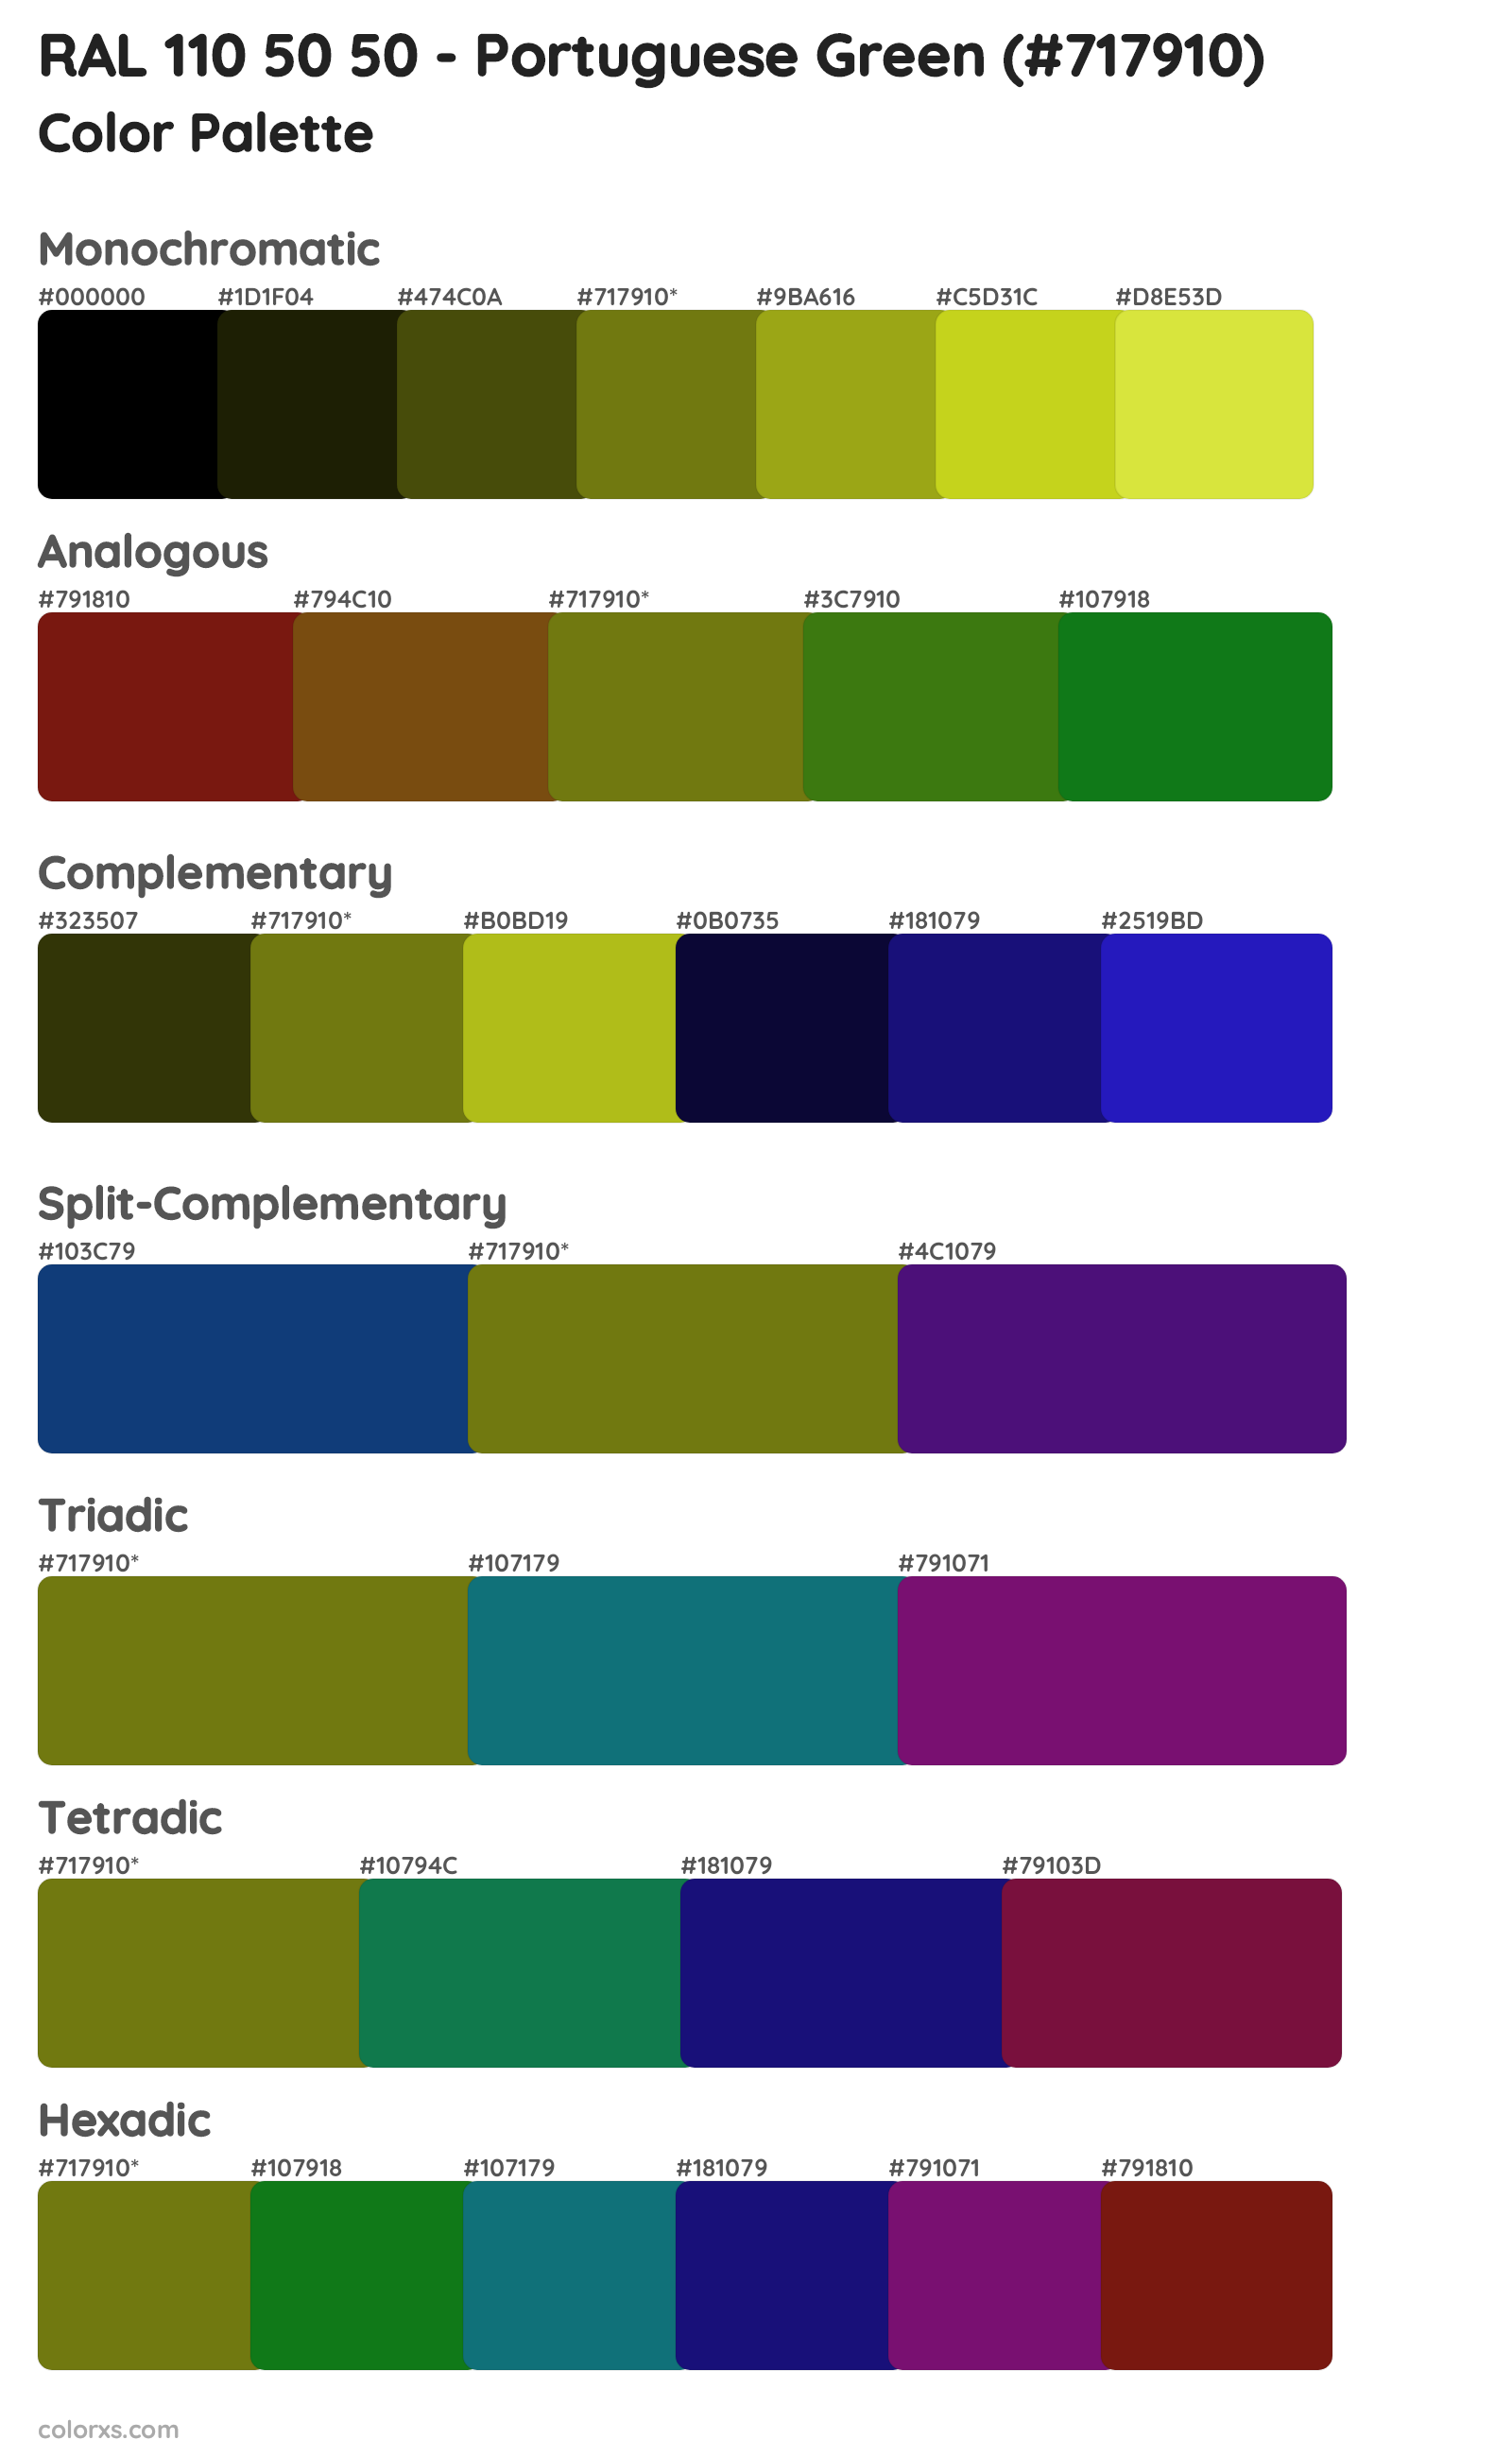 RAL 110 50 50 - Portuguese Green Color Scheme Palettes